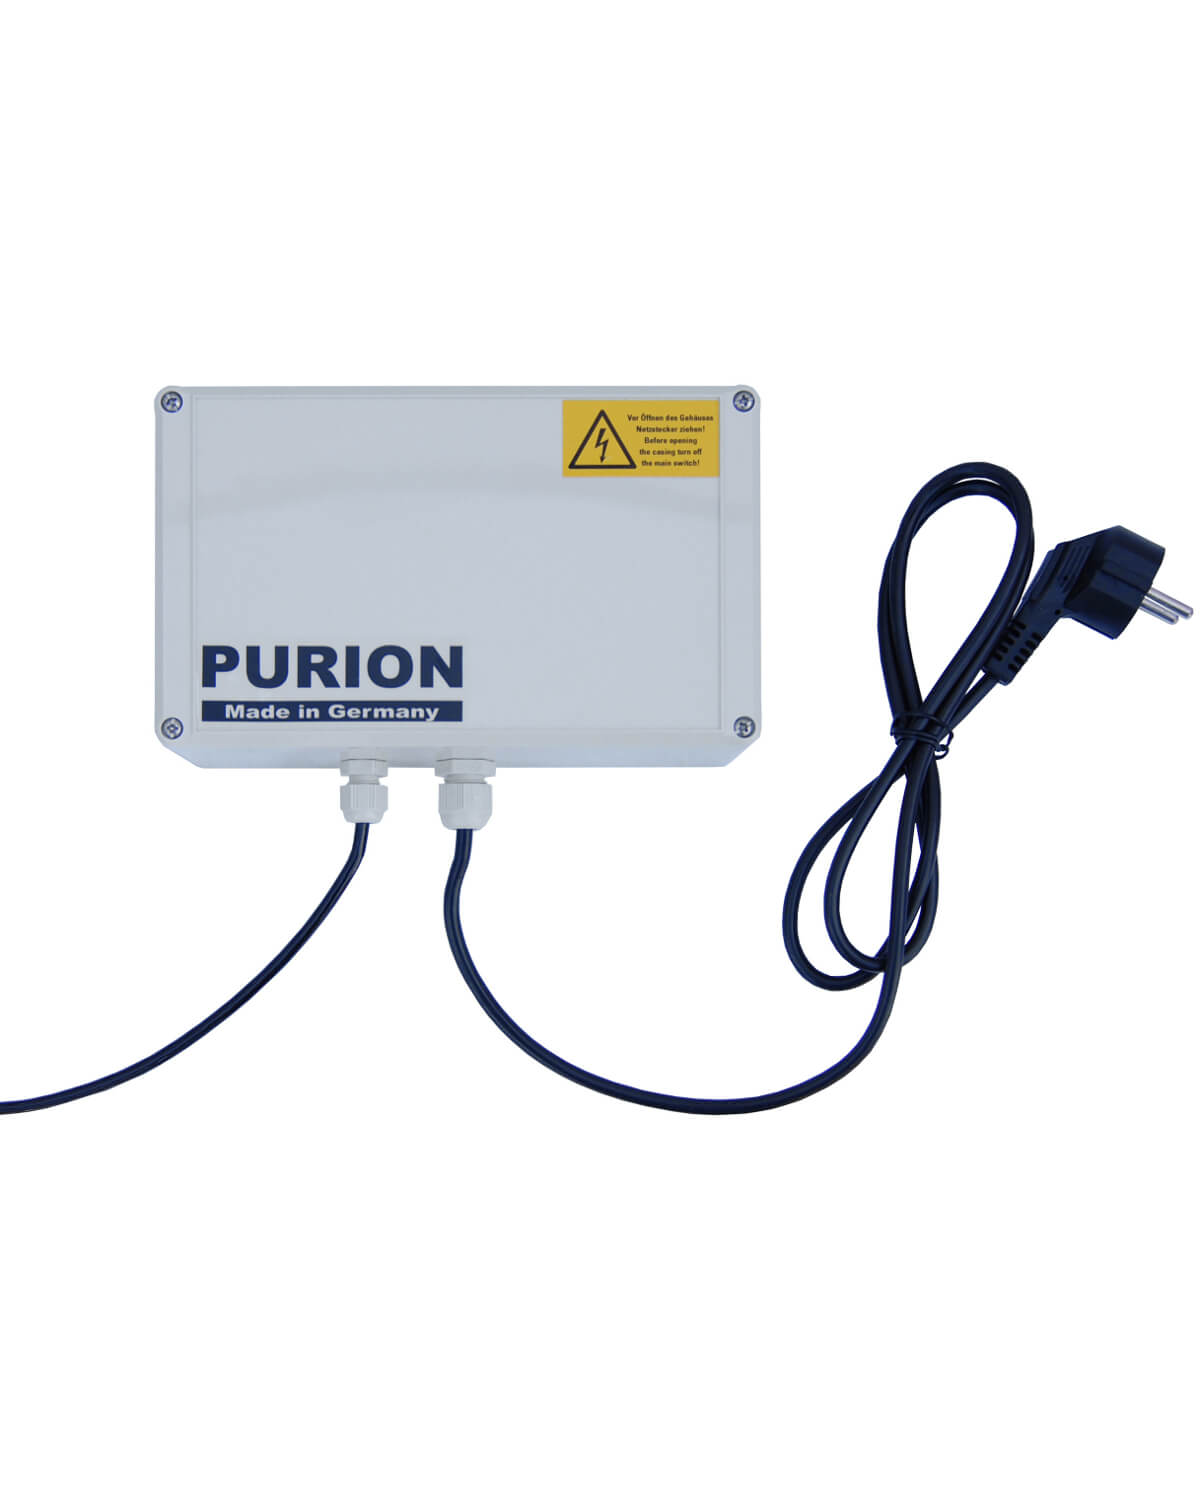 Die PURION 500 110 - 240 V AC Basic von UV Concept GmbH ist eine Desinfektionsanlage, die auf Trinkwasseraufbereitung spezialisiert ist.